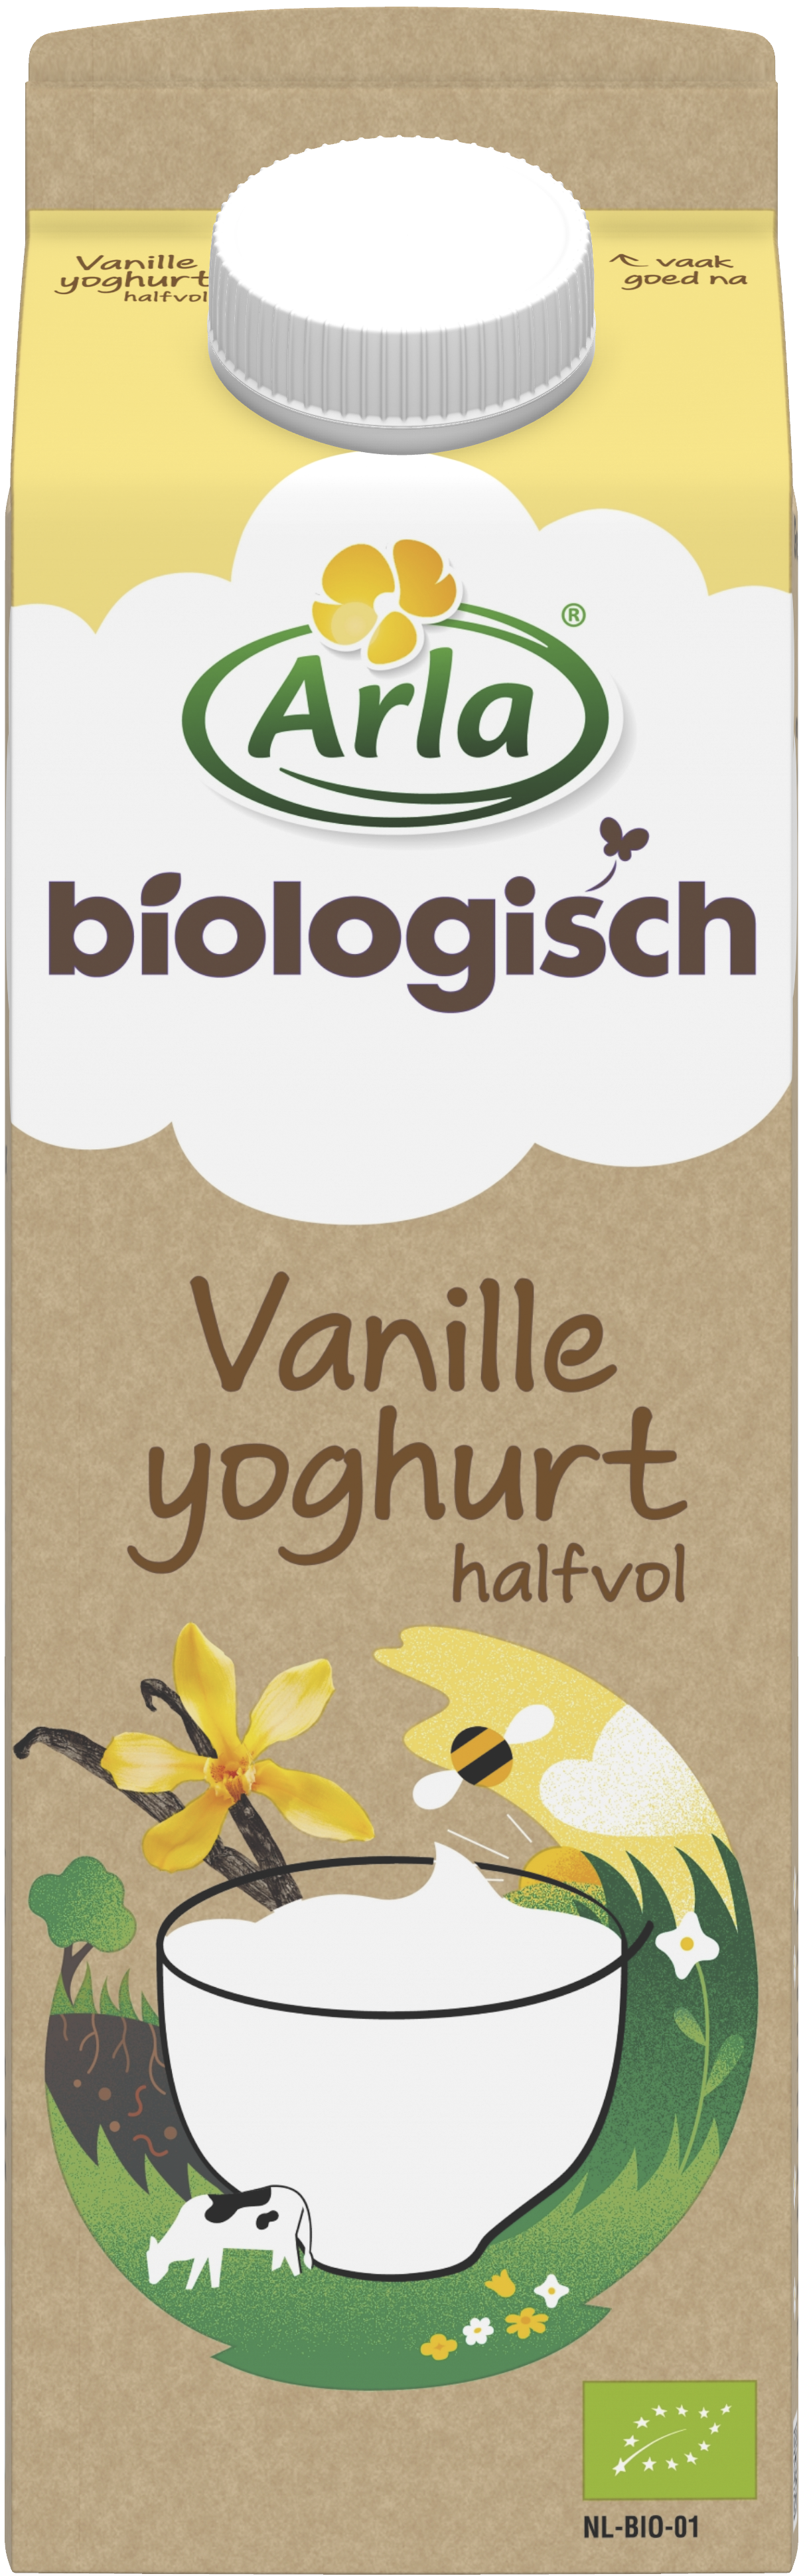 Biologisch Vanilleyoghurt 1 liter